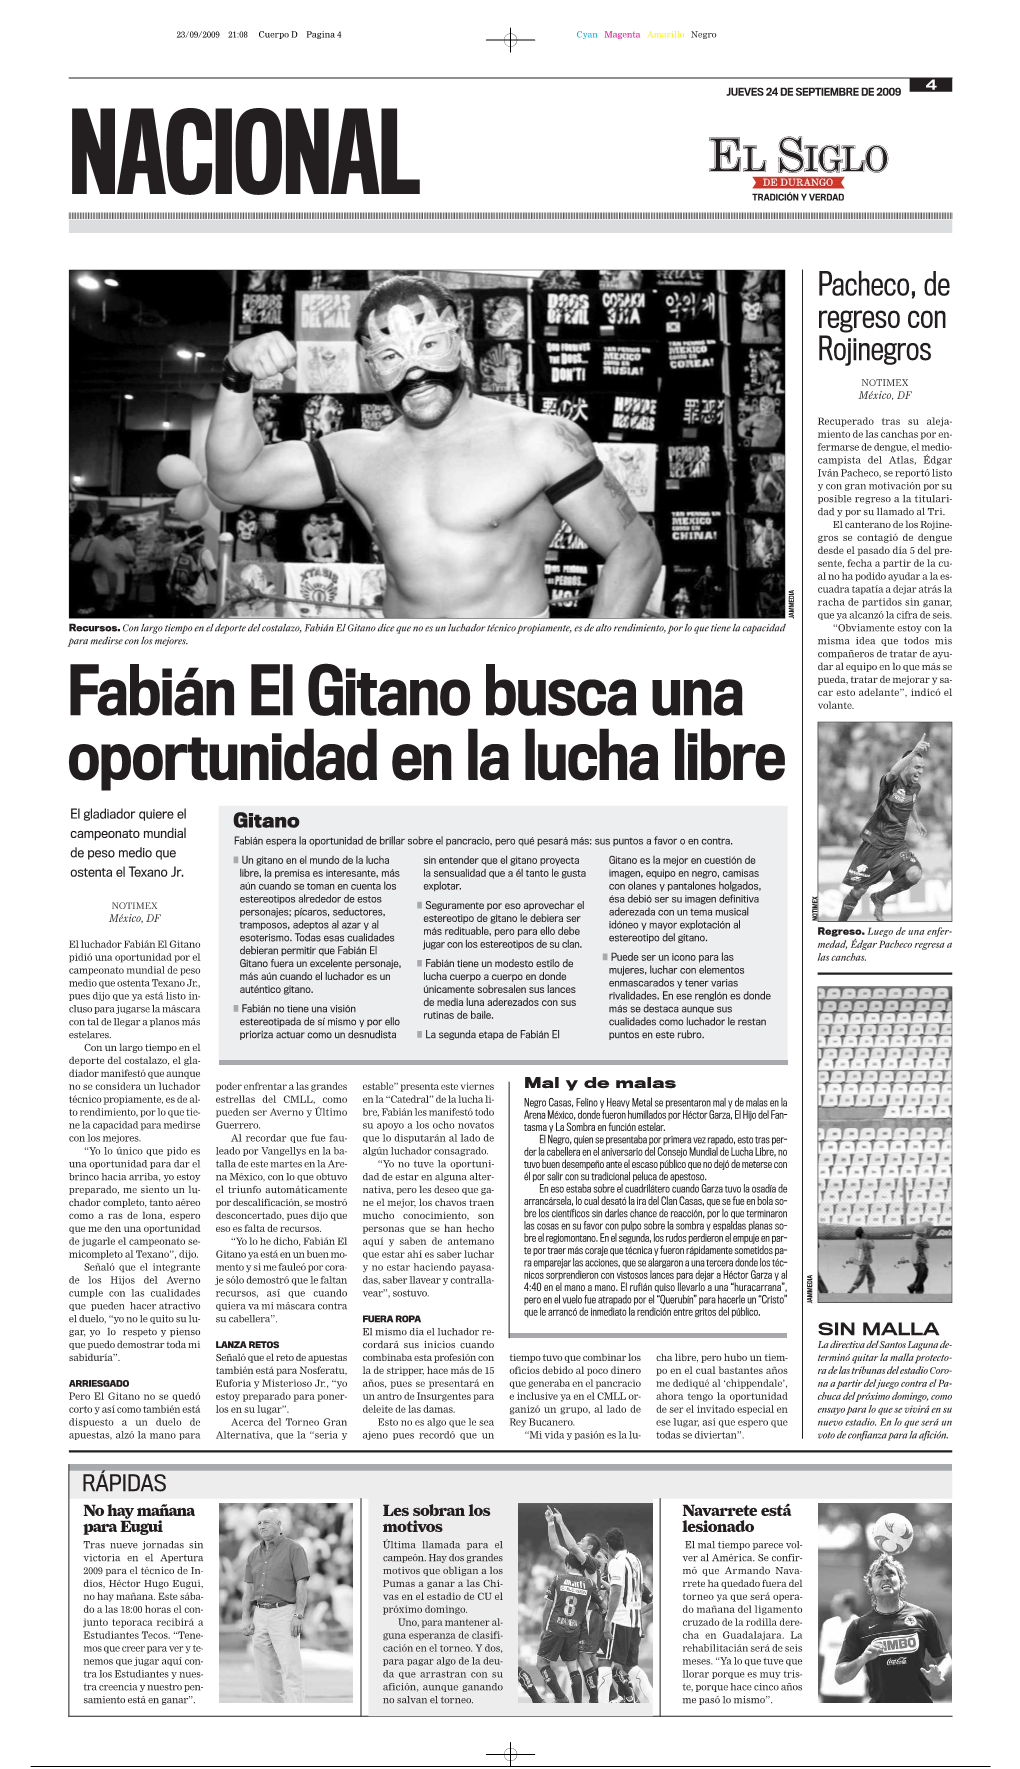 Fabián El Gitano Busca Una Oportunidad En La Lucha Libre